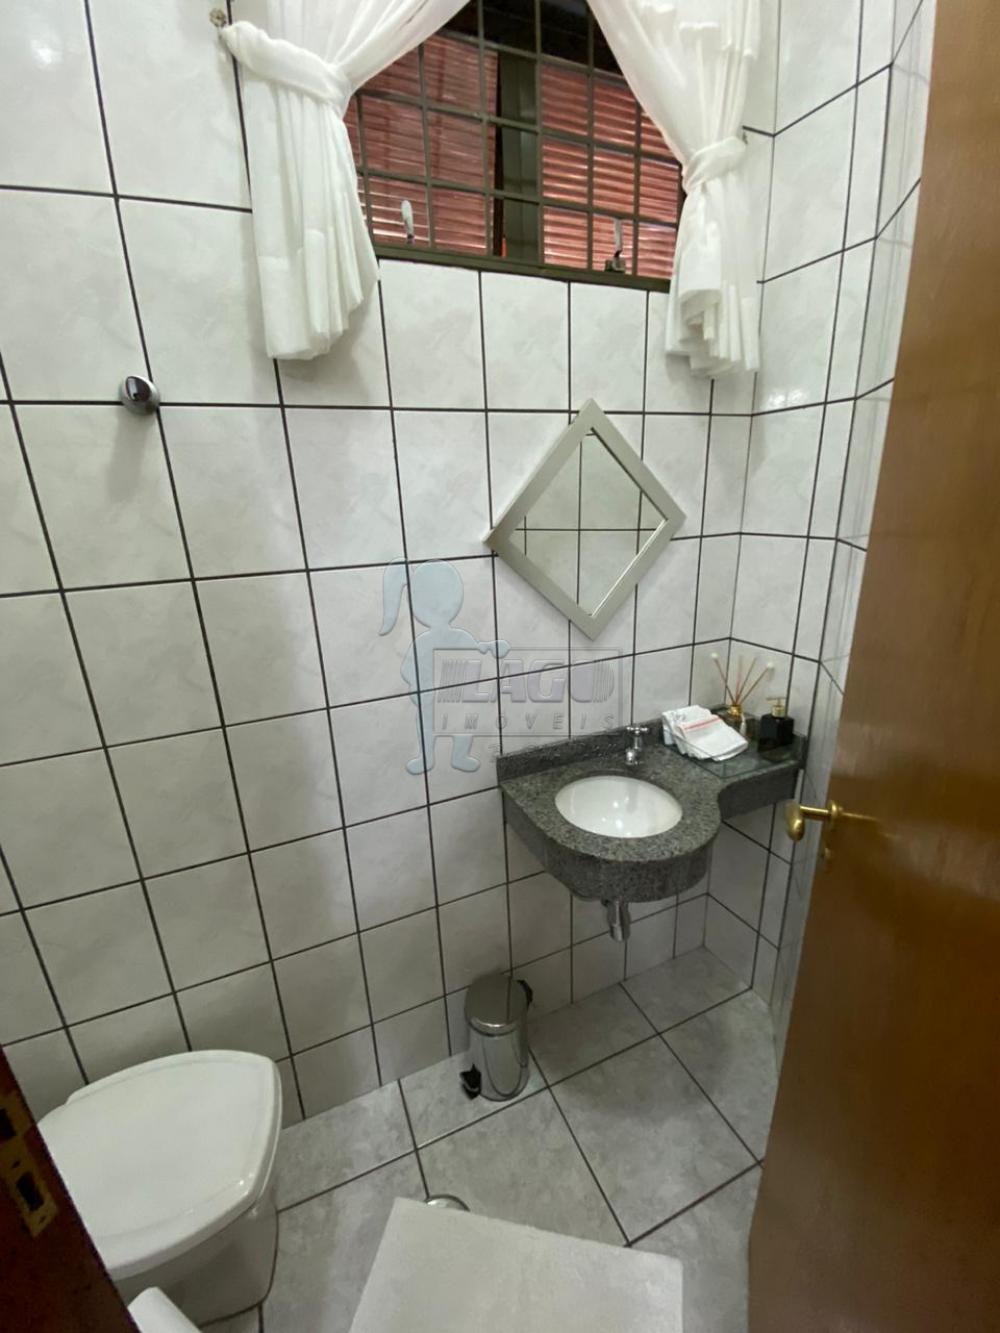 Comprar Casas / Padrão em Ribeirão Preto R$ 1.300.000,00 - Foto 9